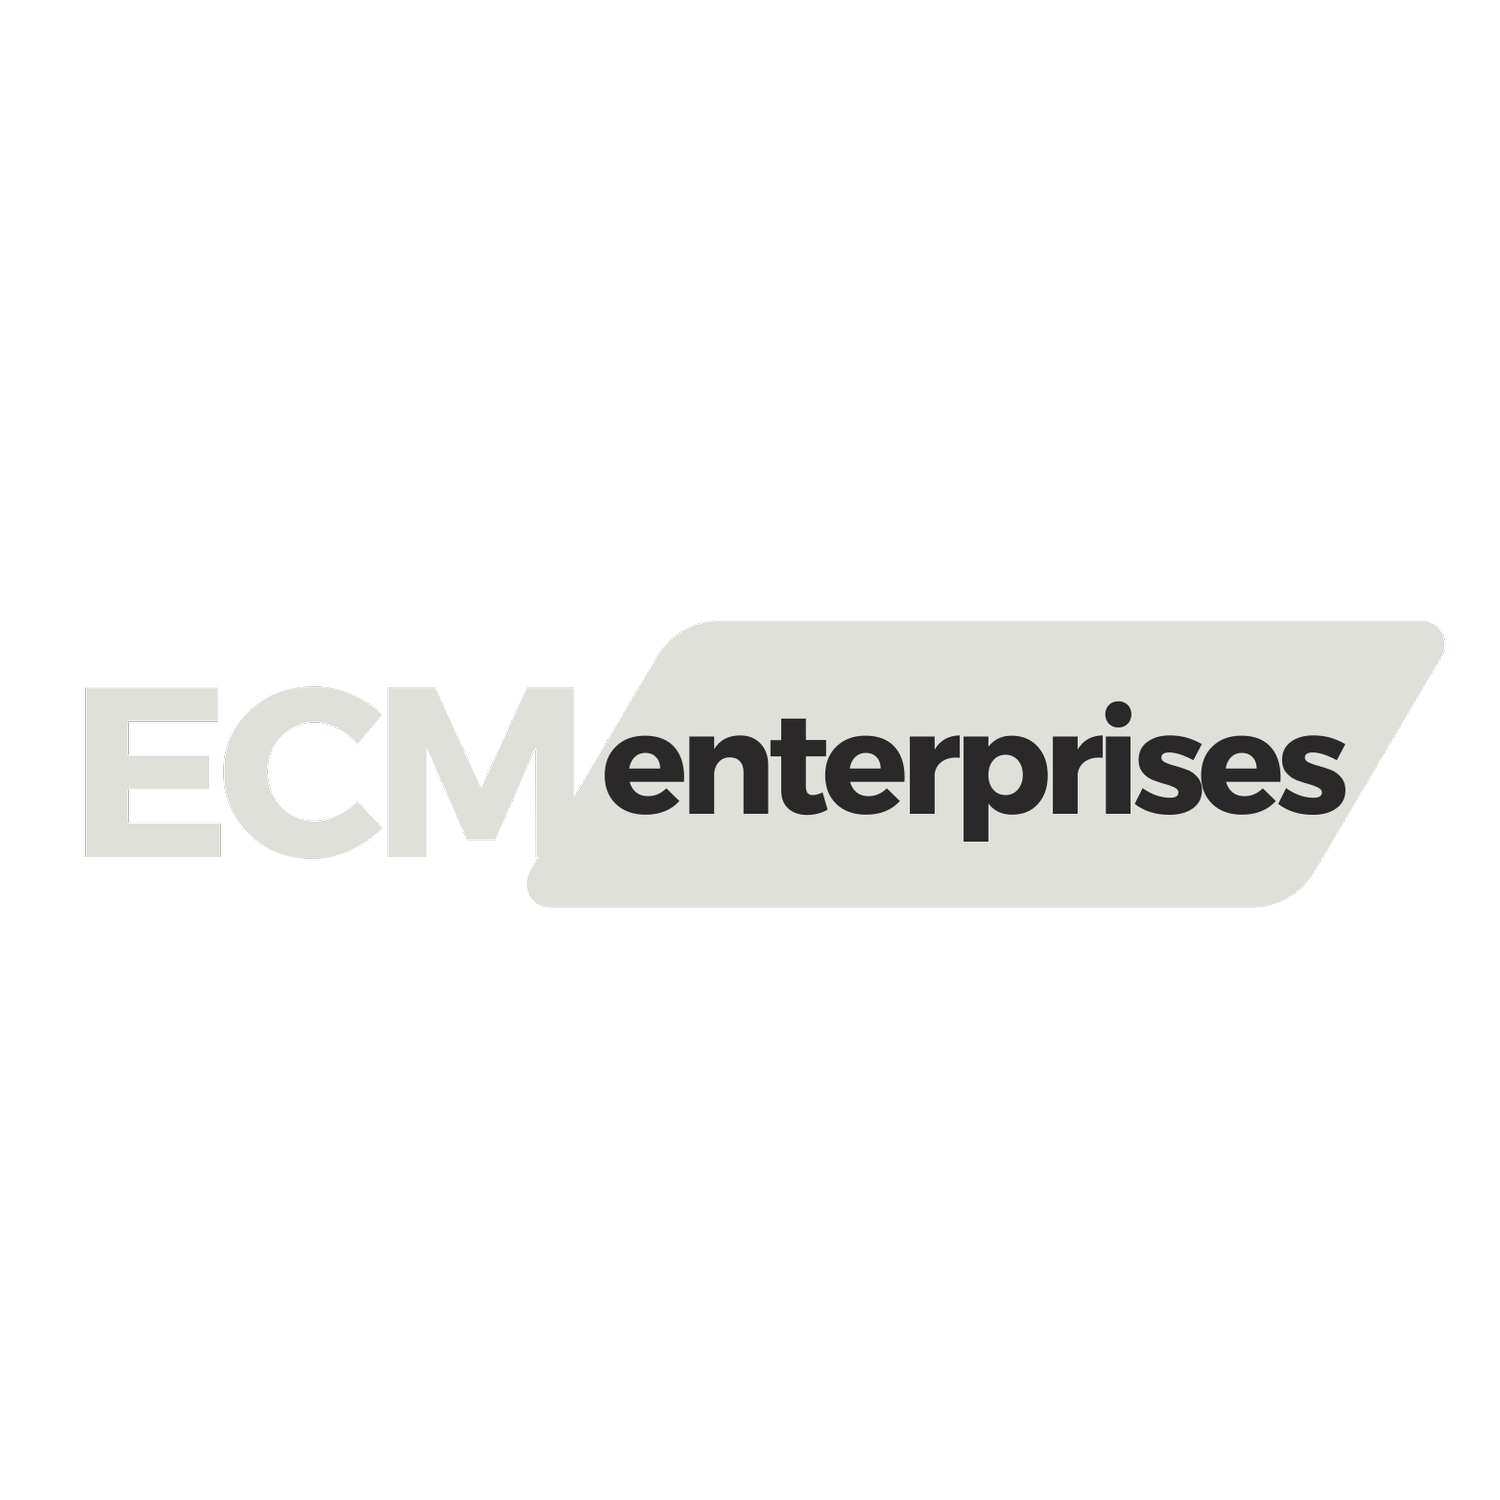 ECM Enterprises